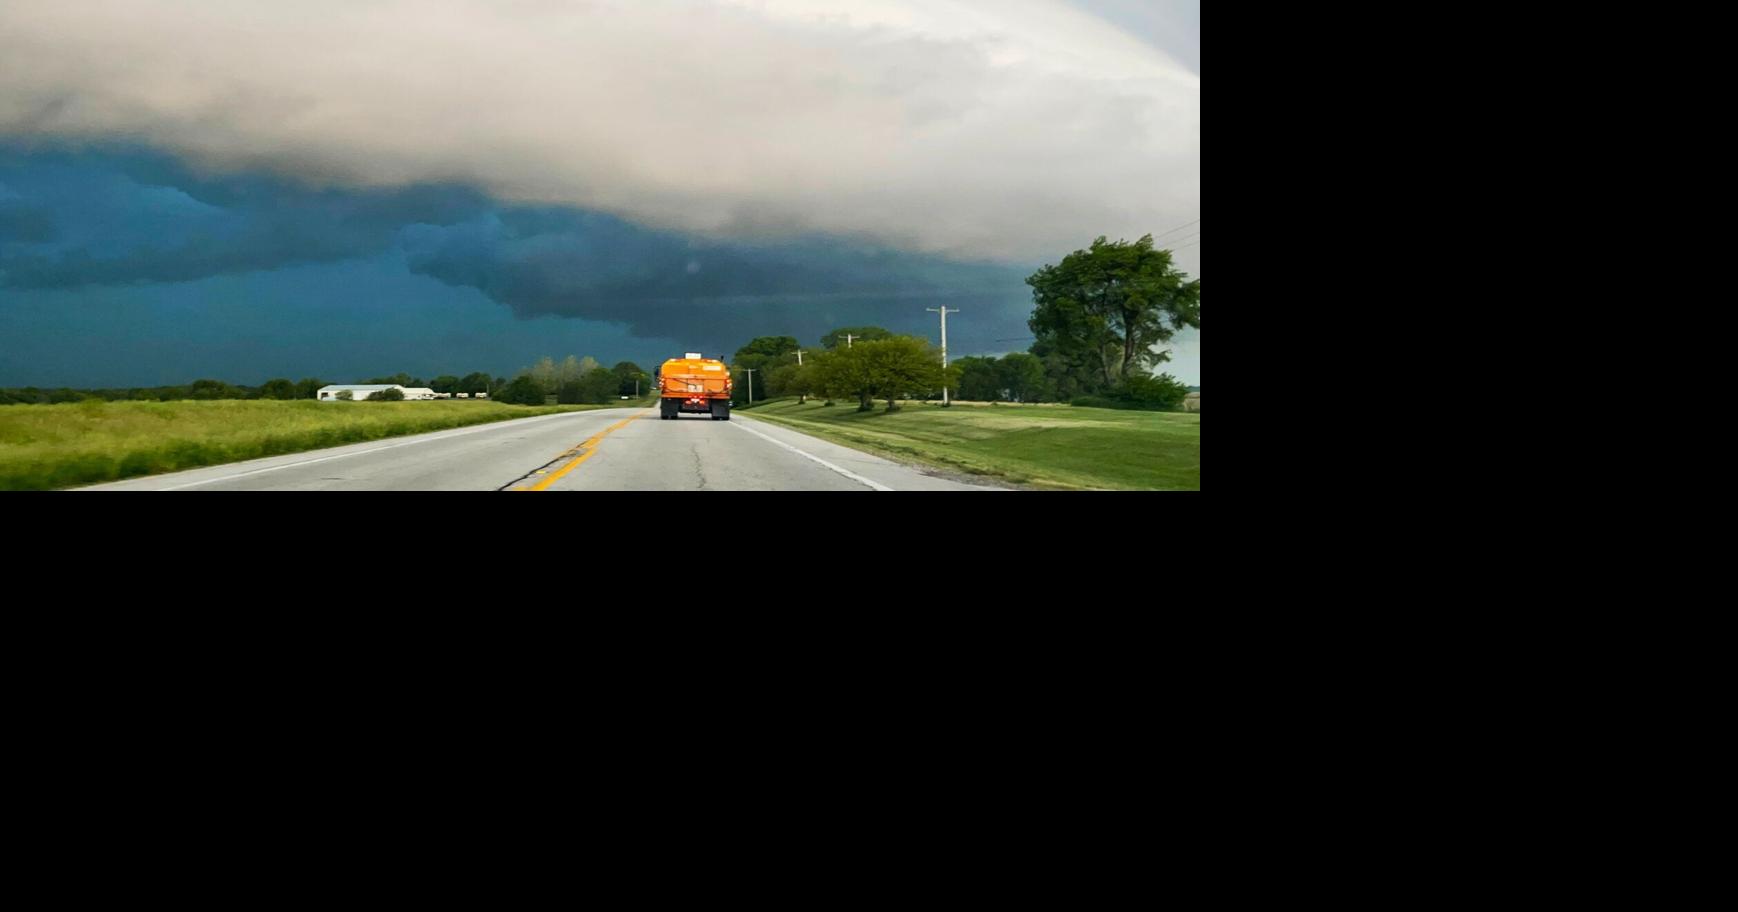 Nebraska Western Iowa tornadoes derecho